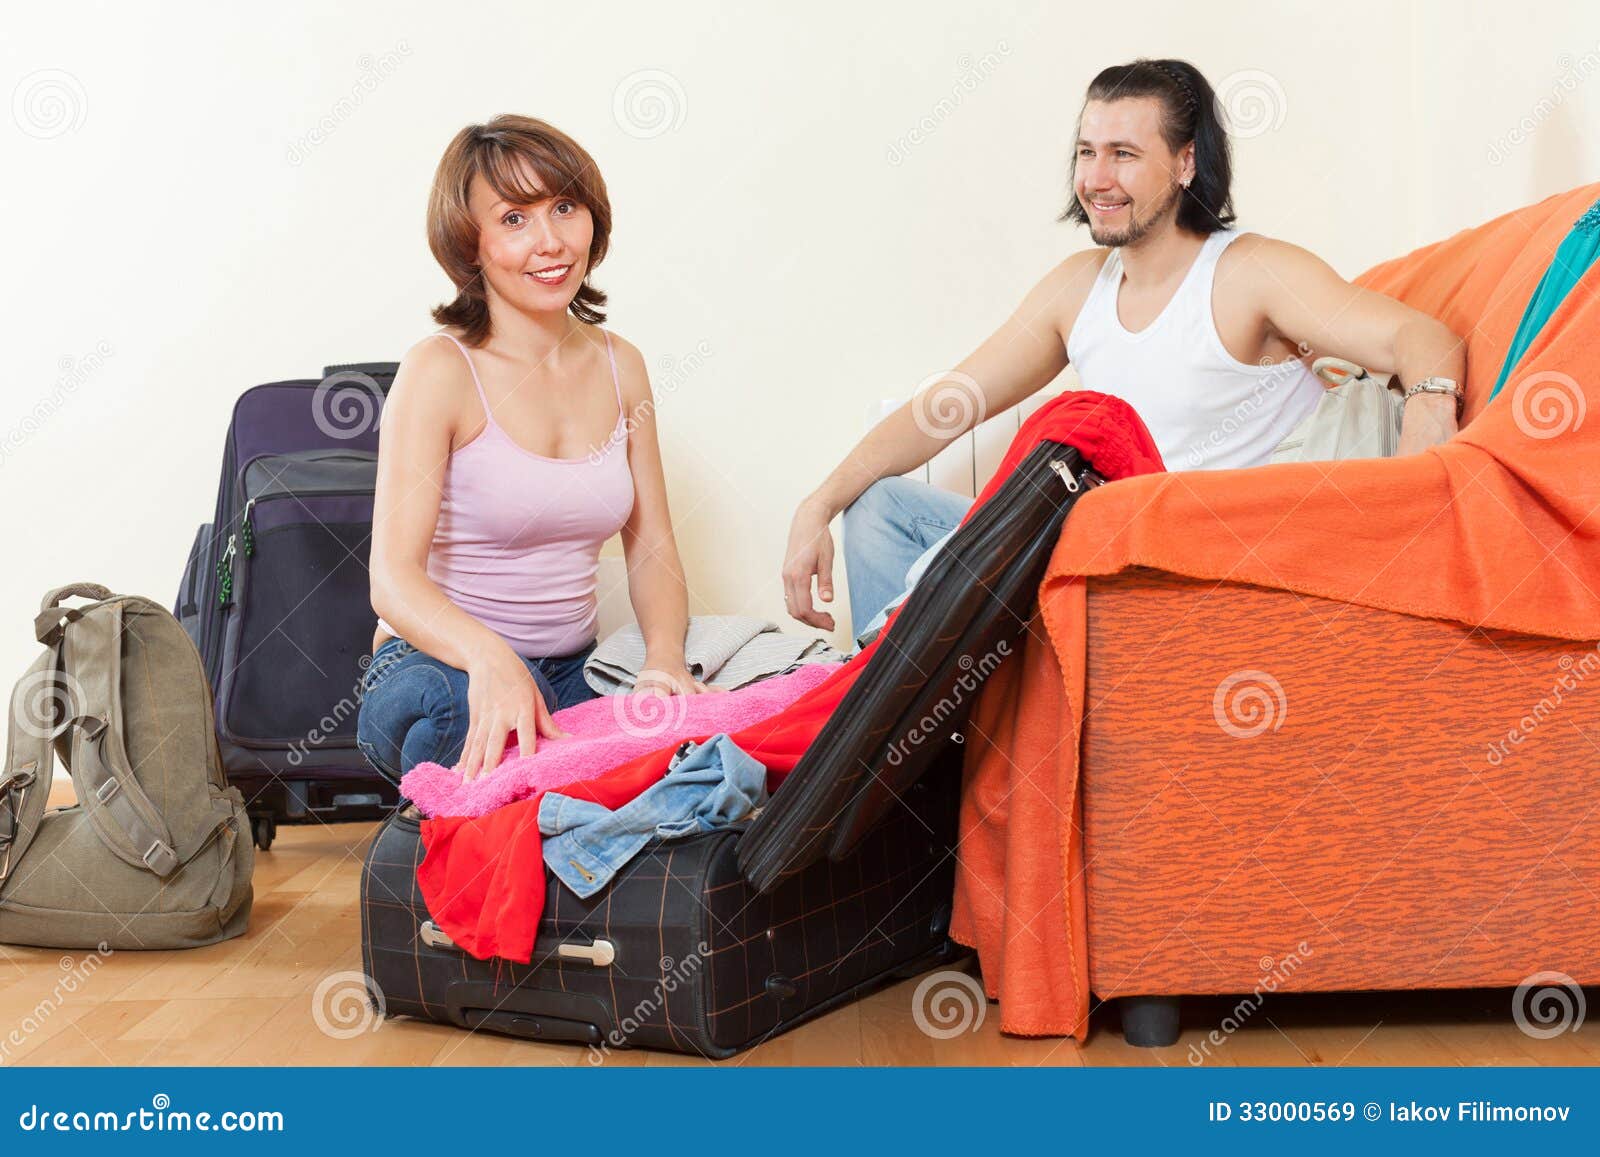 Бесплатное видео в командировке. Муж собирает вещи. Девушка с чемоданом. Женщина собирает вещи. Мужчина и женщина с чемоданами.